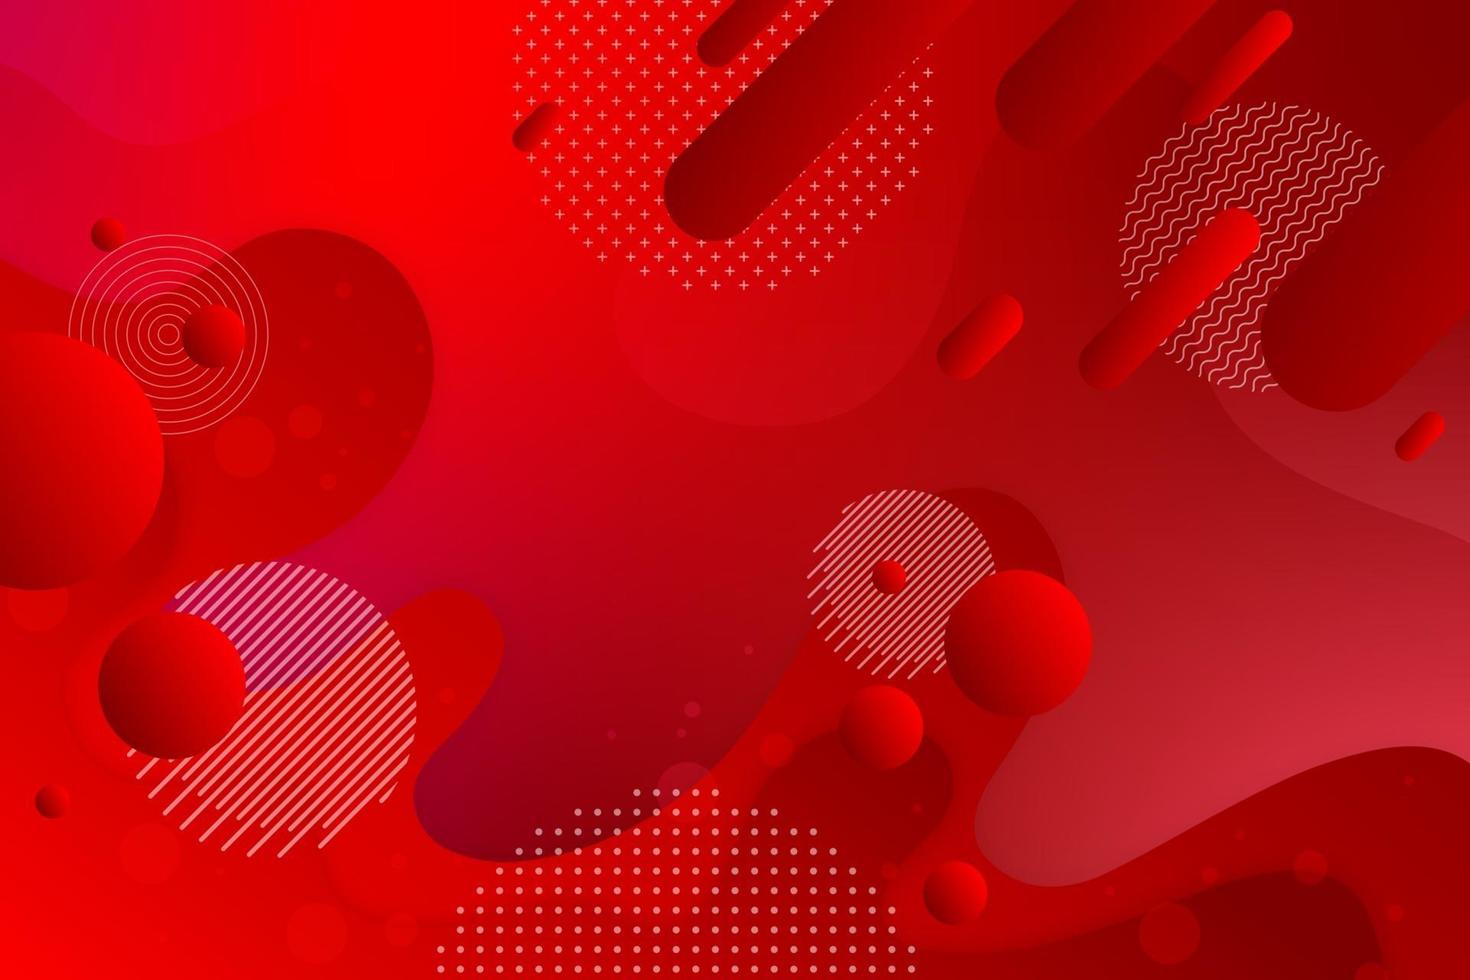 rode achtergrond met verhoudingen en componenten in een vloeiende, golvende vorm en kleurgradatie. vector